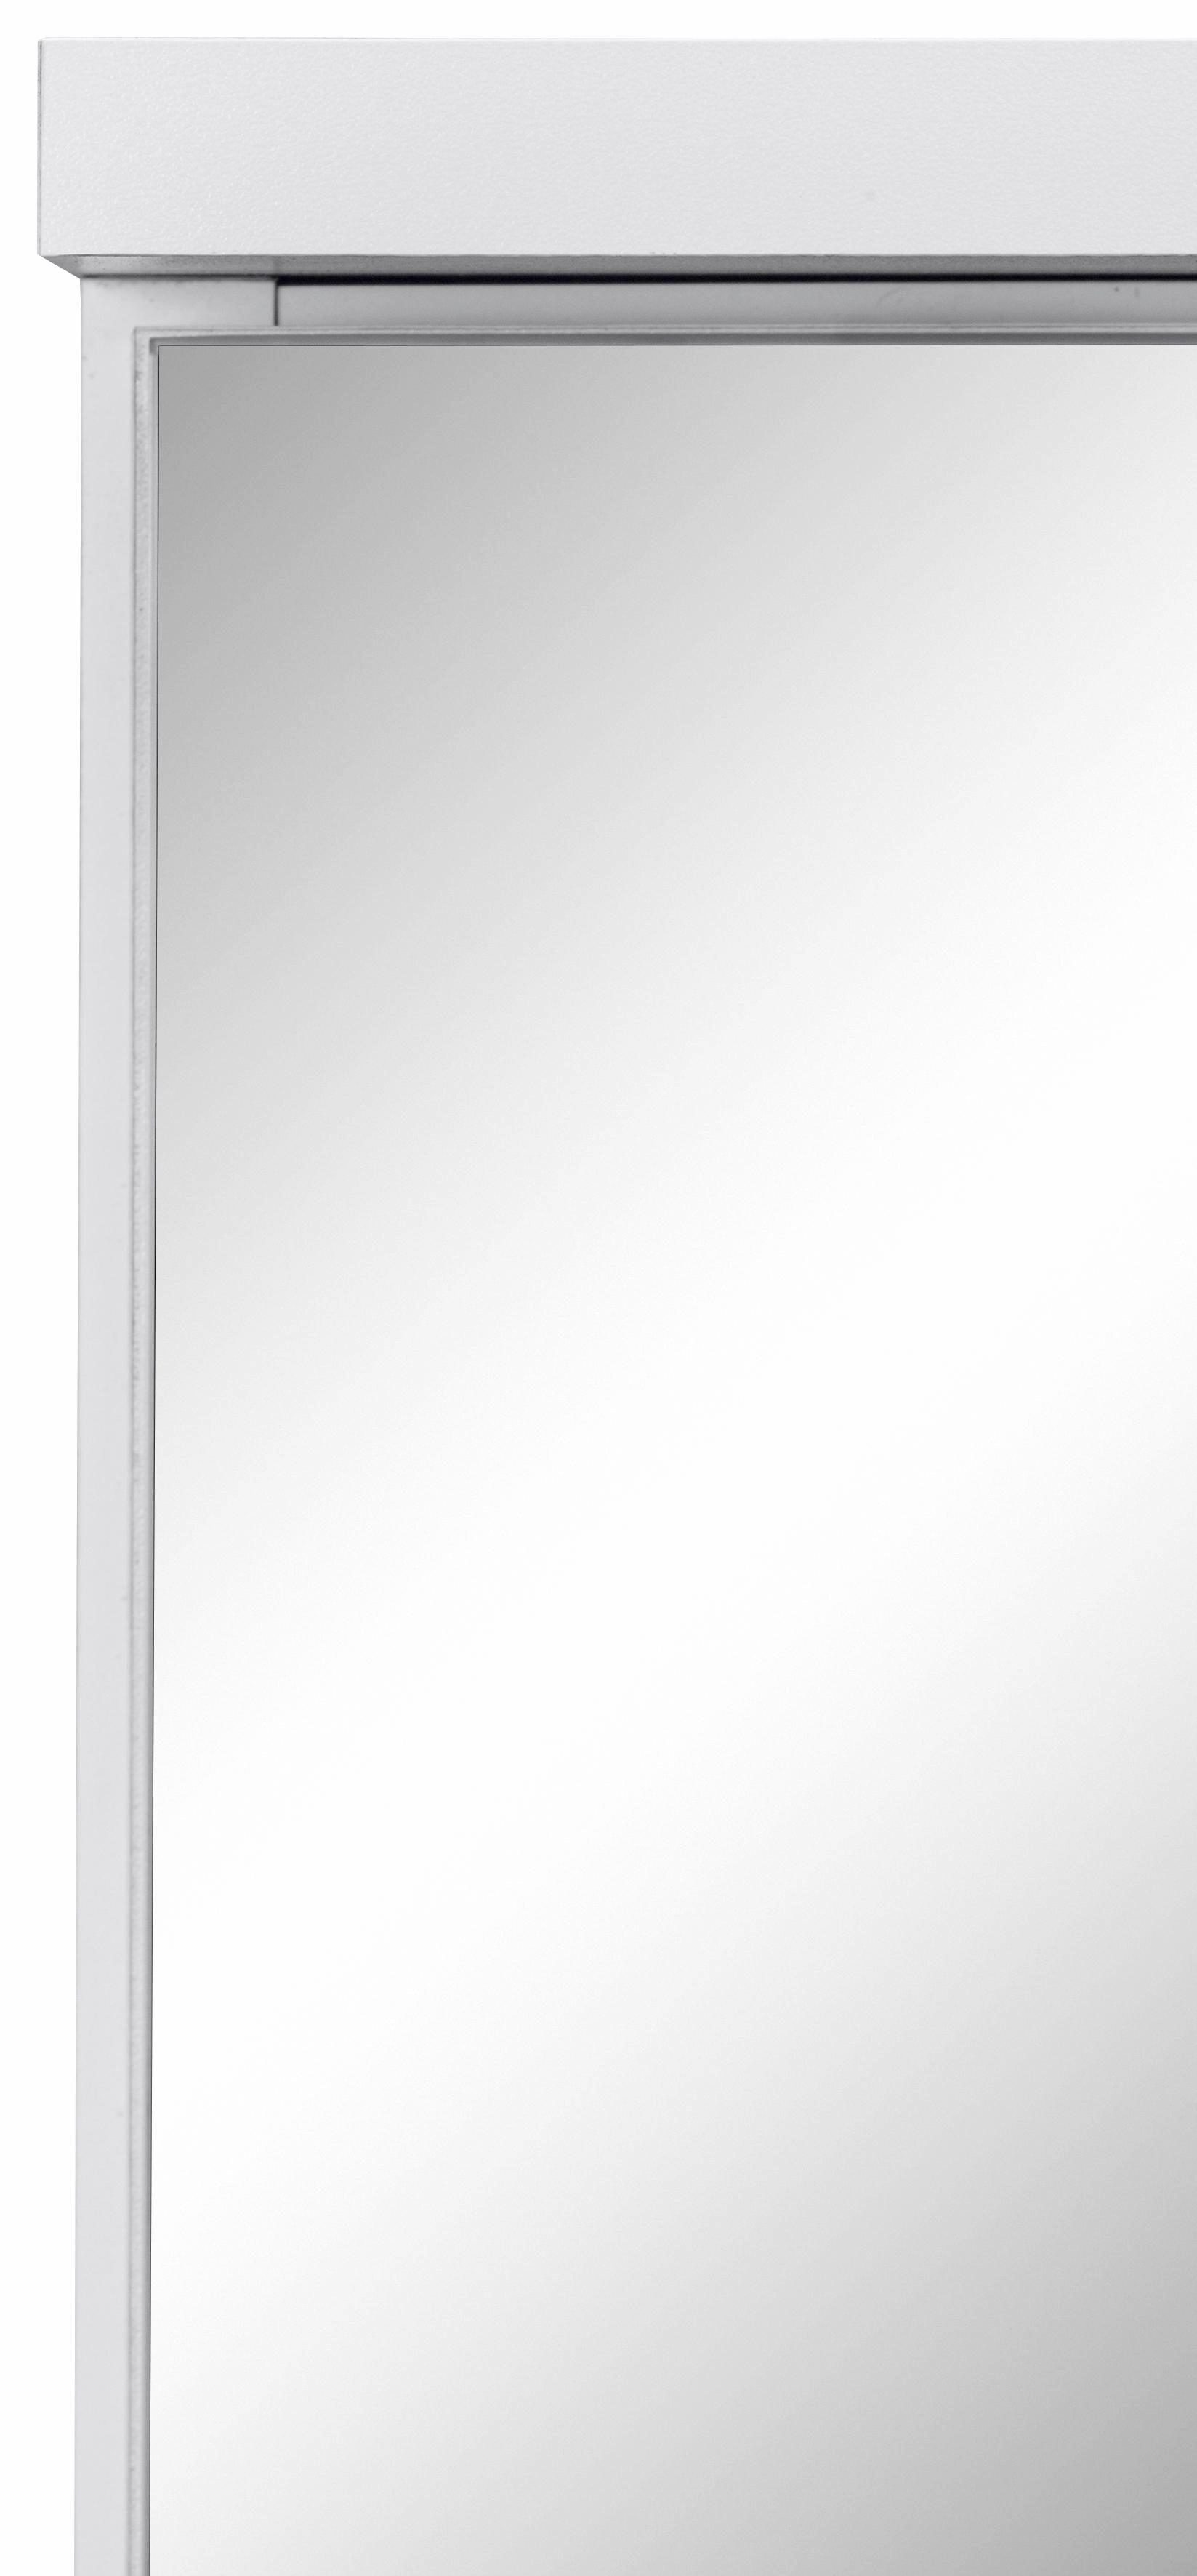 HELD MÖBEL Ravenna 100 cm | Spiegelschrank weiß weiß Breite